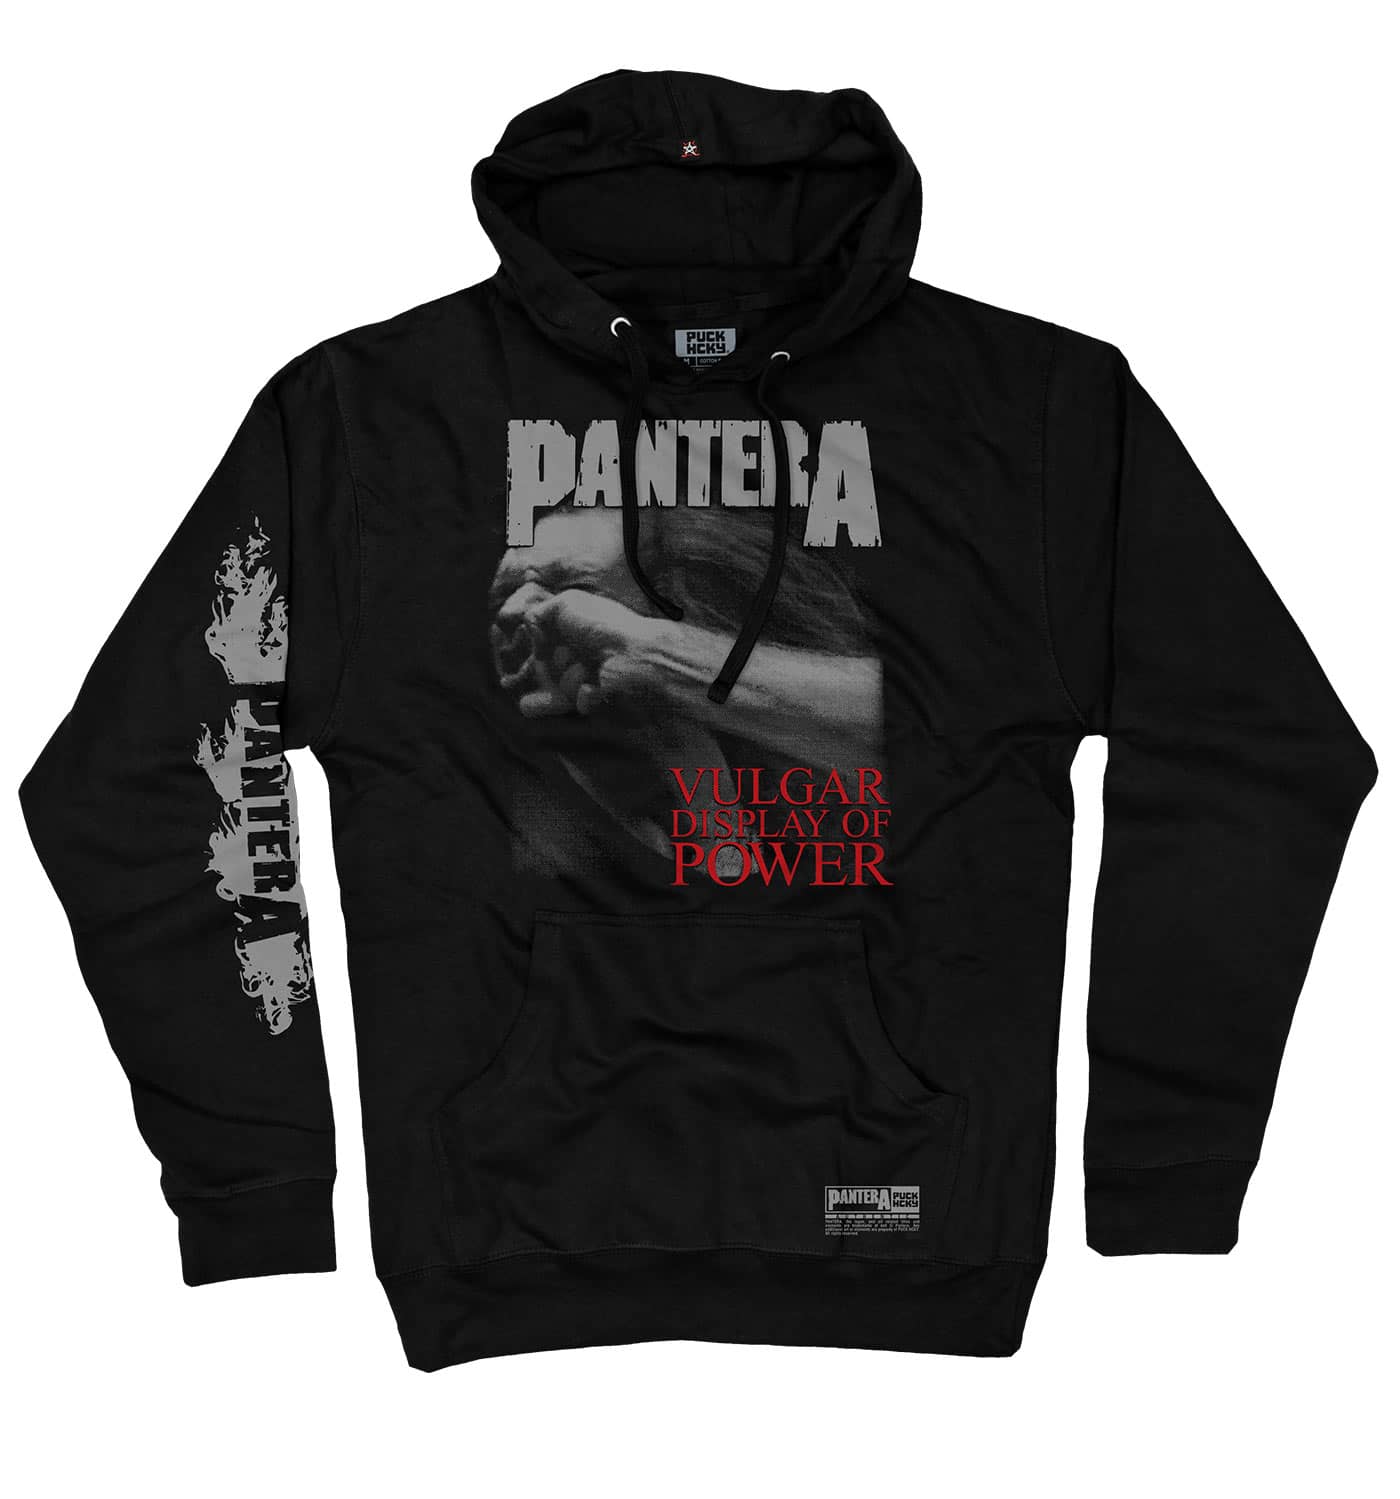 PANTERA 'A VULGAR DISPLAY' pullover hockey hoodie in black front view